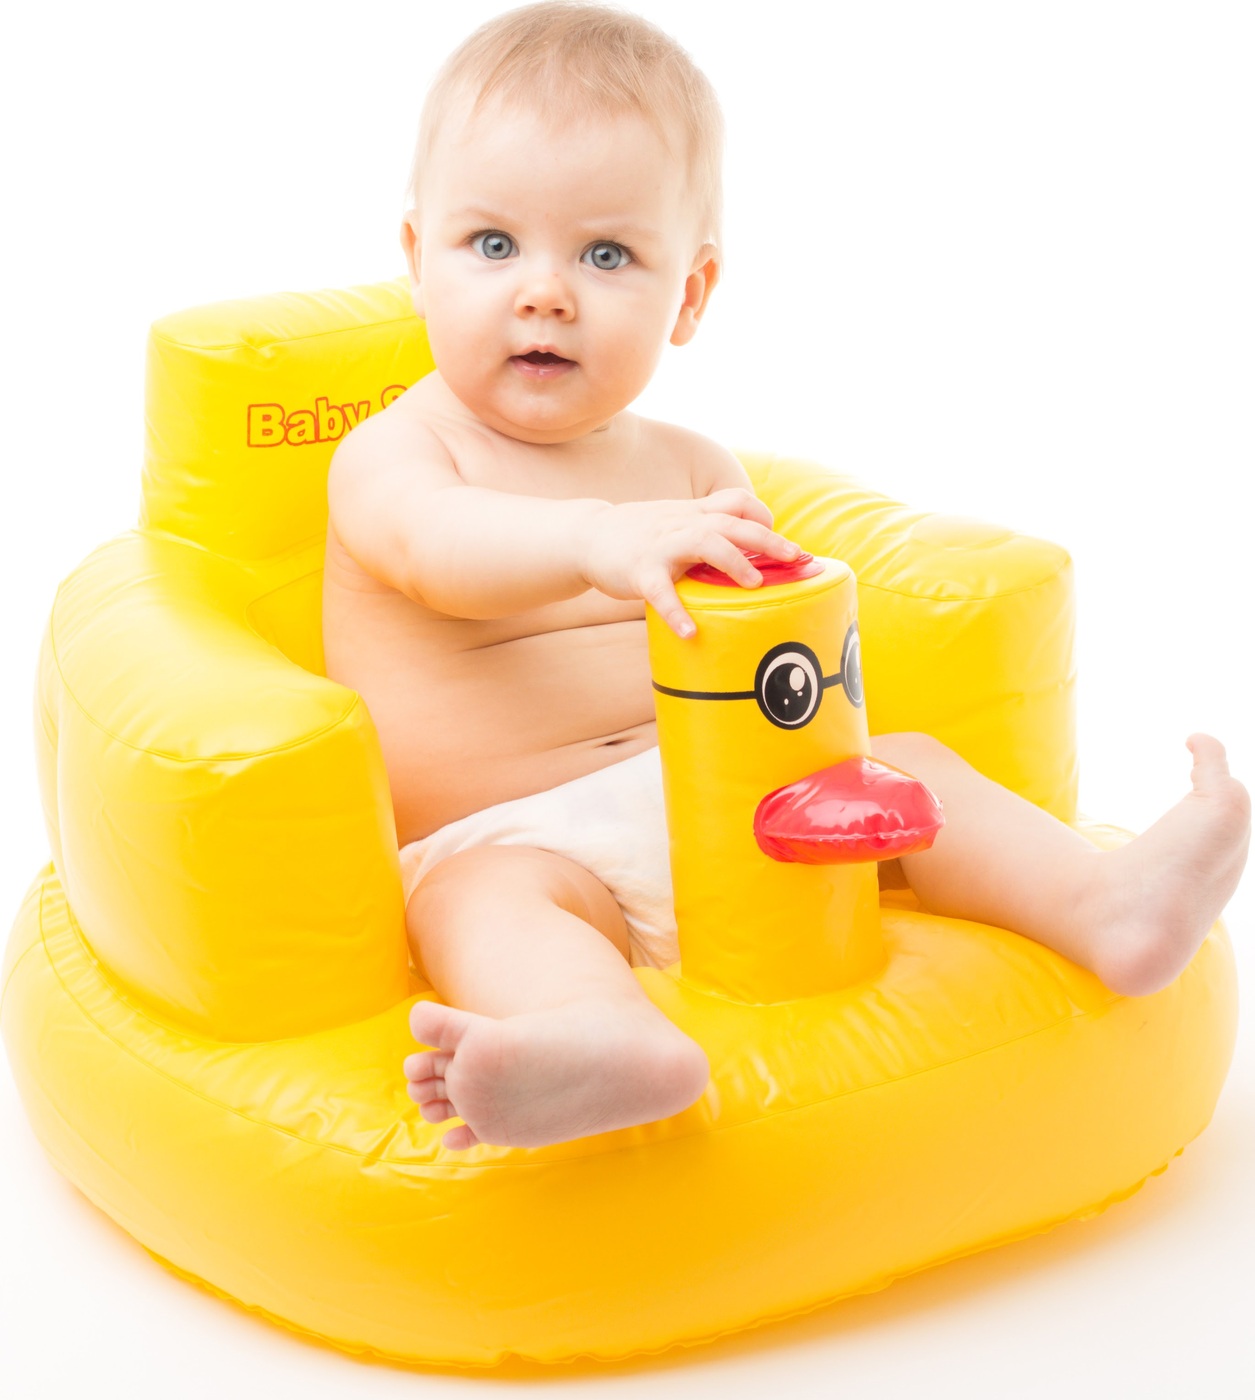 Кресло для купания. Baby swimmer надувное кресло для ребенка. Baby swimmer надувное кресло утка. Сиденье для купания малыша. Надувной стульчик для купания.